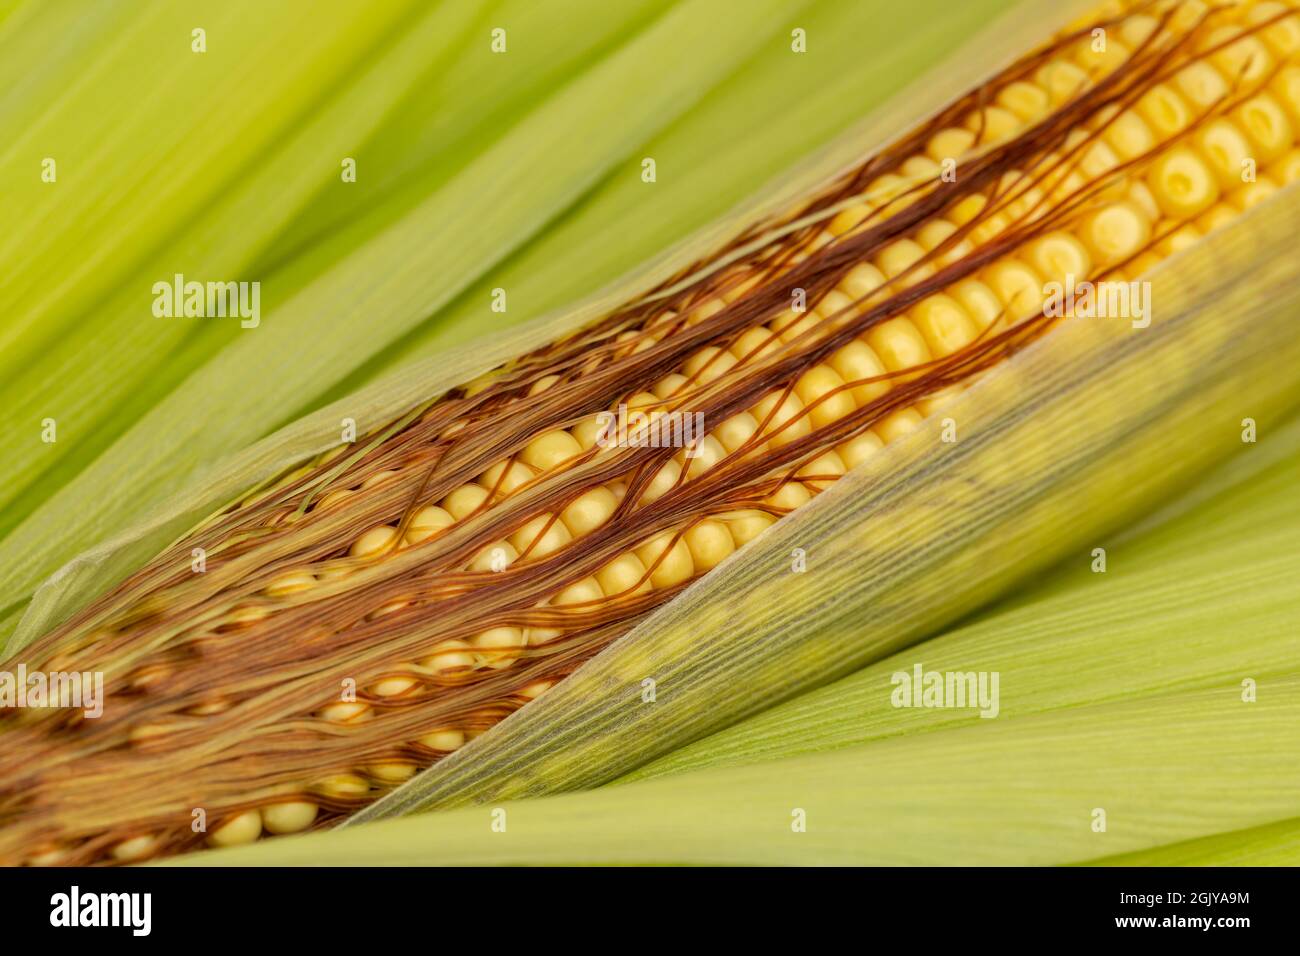 Grains de maïs sur l'oreille avec de la soie. Concept de remplissage de grain, de stade de croissance et de jeu de grains Banque D'Images